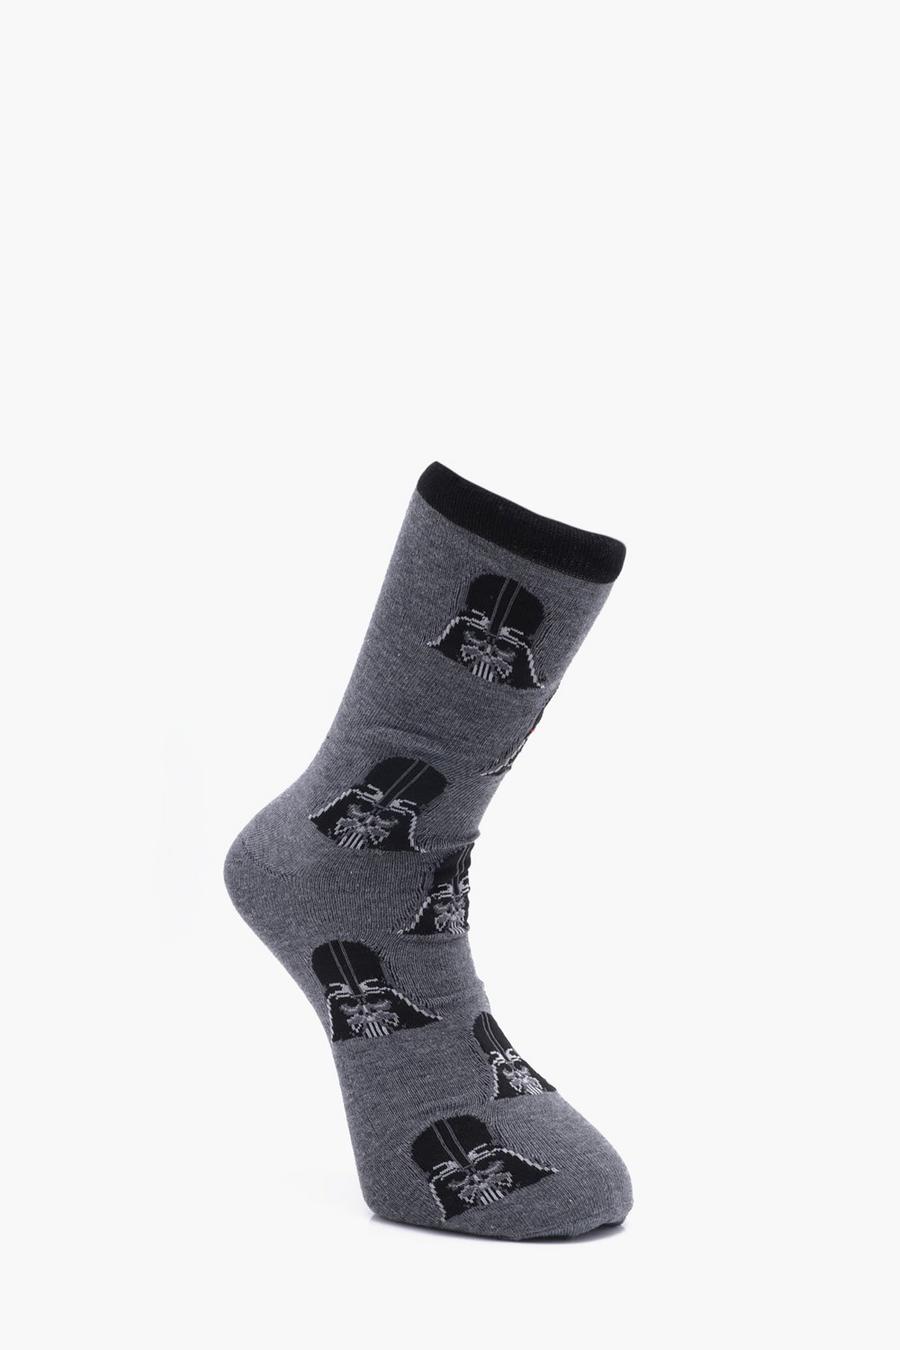 Grey Star Wars Darth Vader Socks image number 1